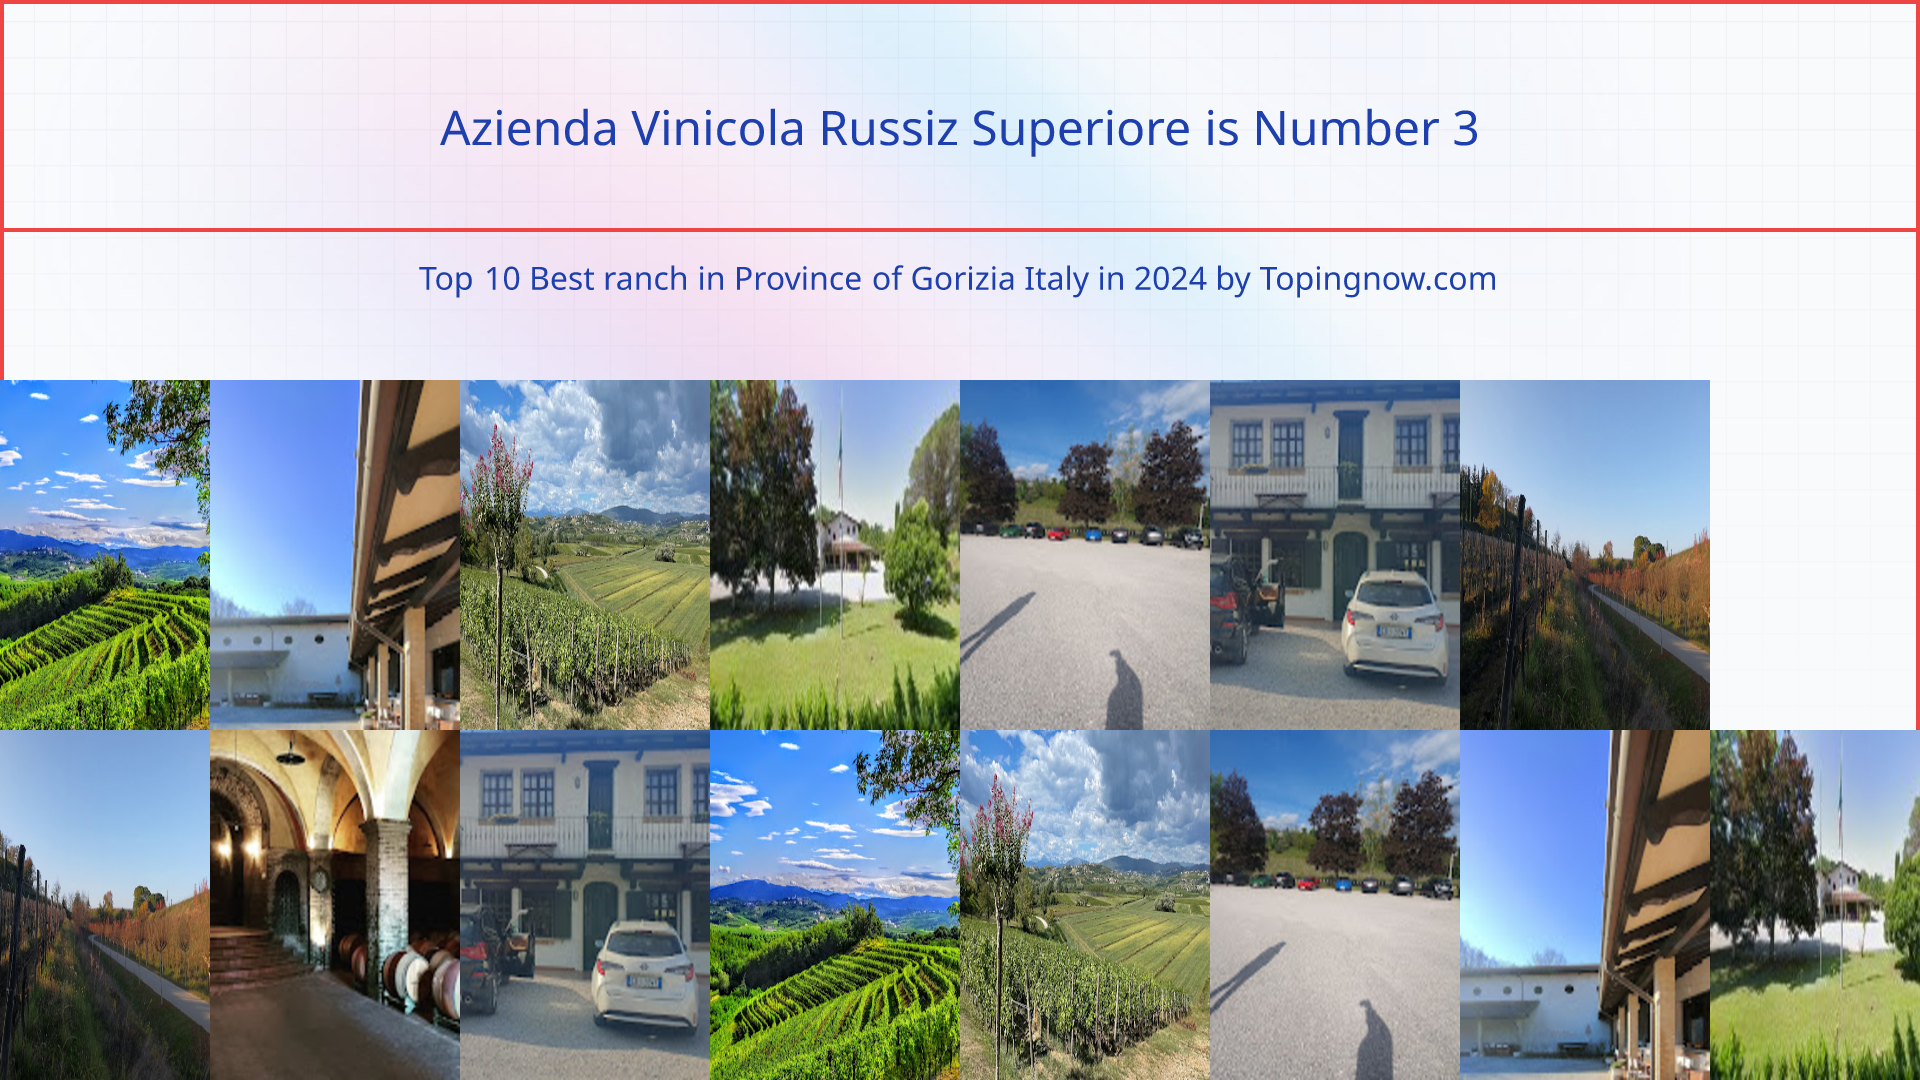 Azienda Vinicola Russiz Superiore: Top 10 Best ranch in Province of Gorizia Italy in 2024